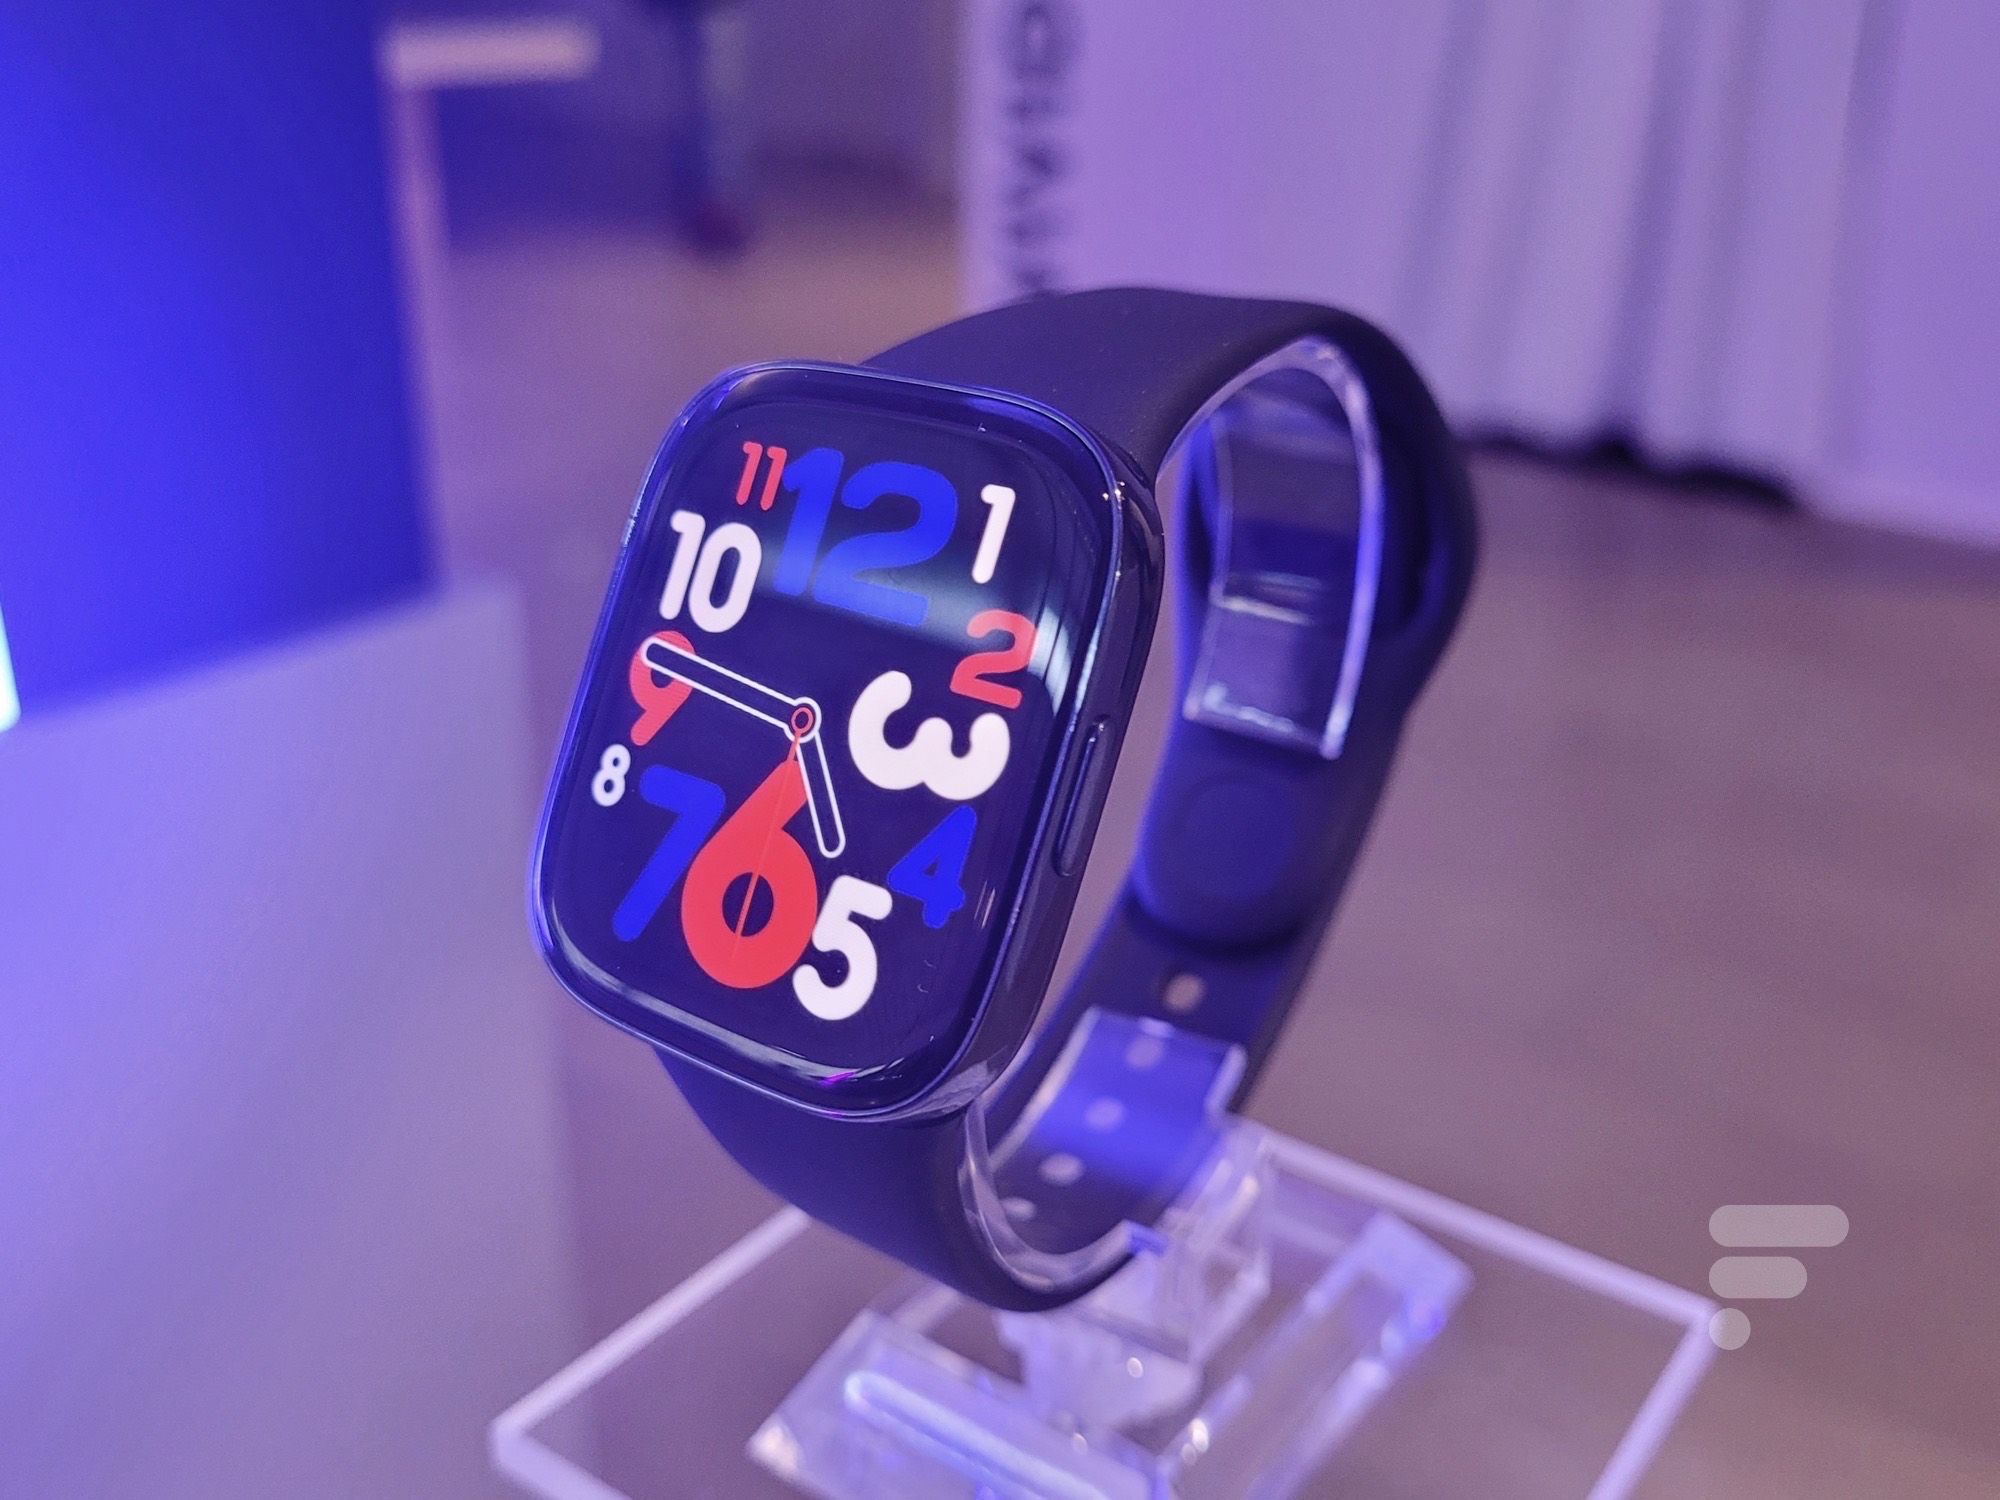 it looks even more like an Apple Watch